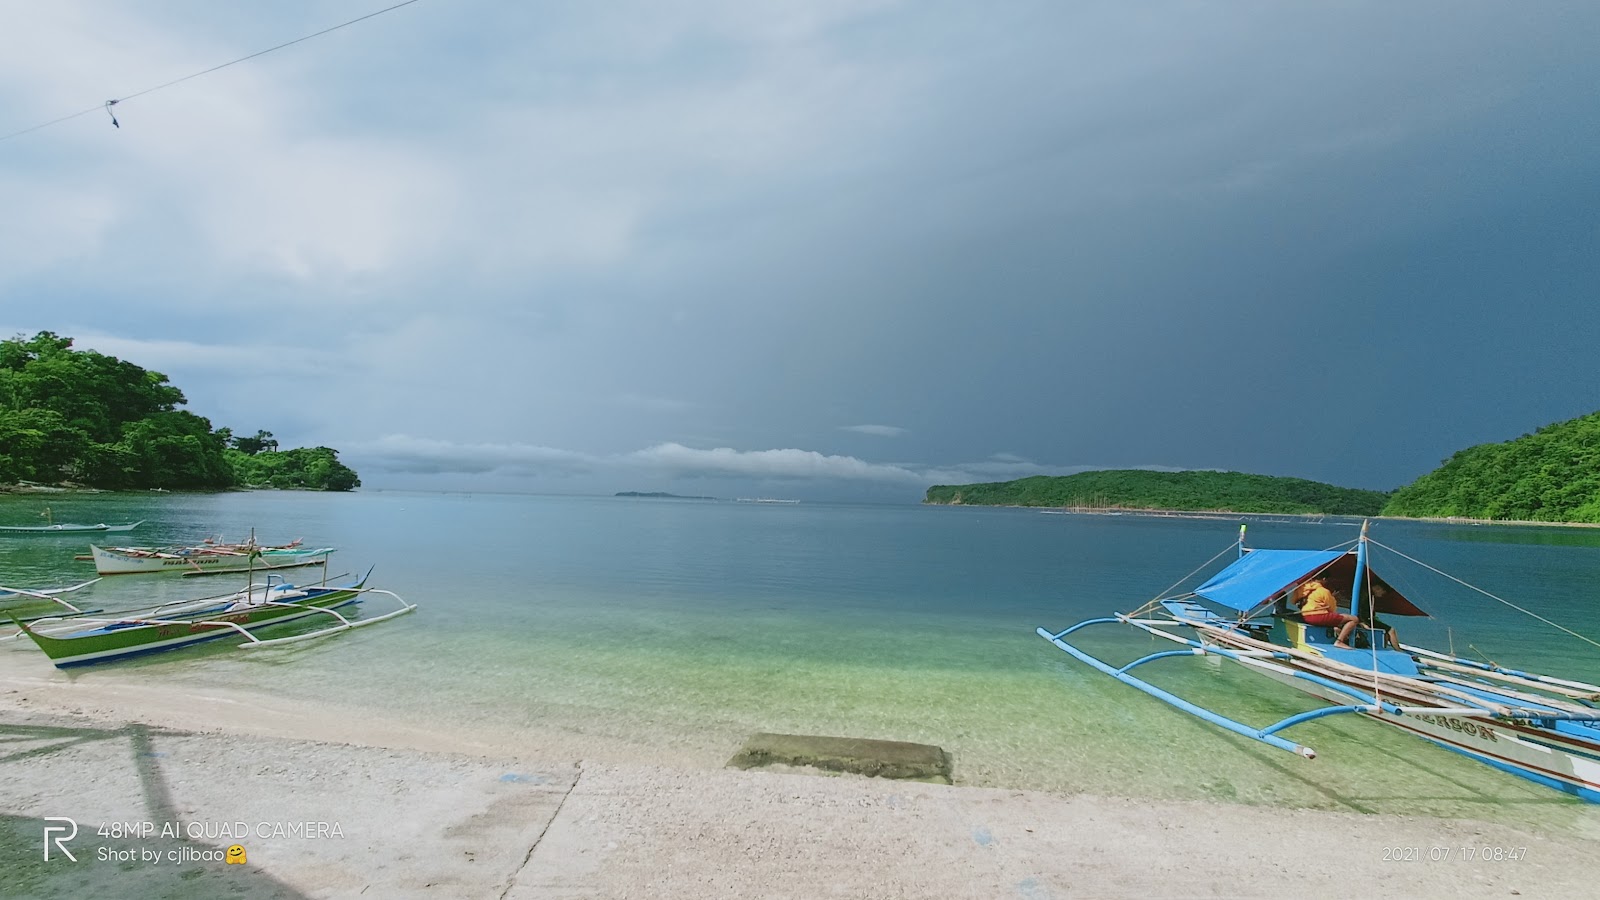 Foto von Balatasan Beach Resort mit geräumige bucht